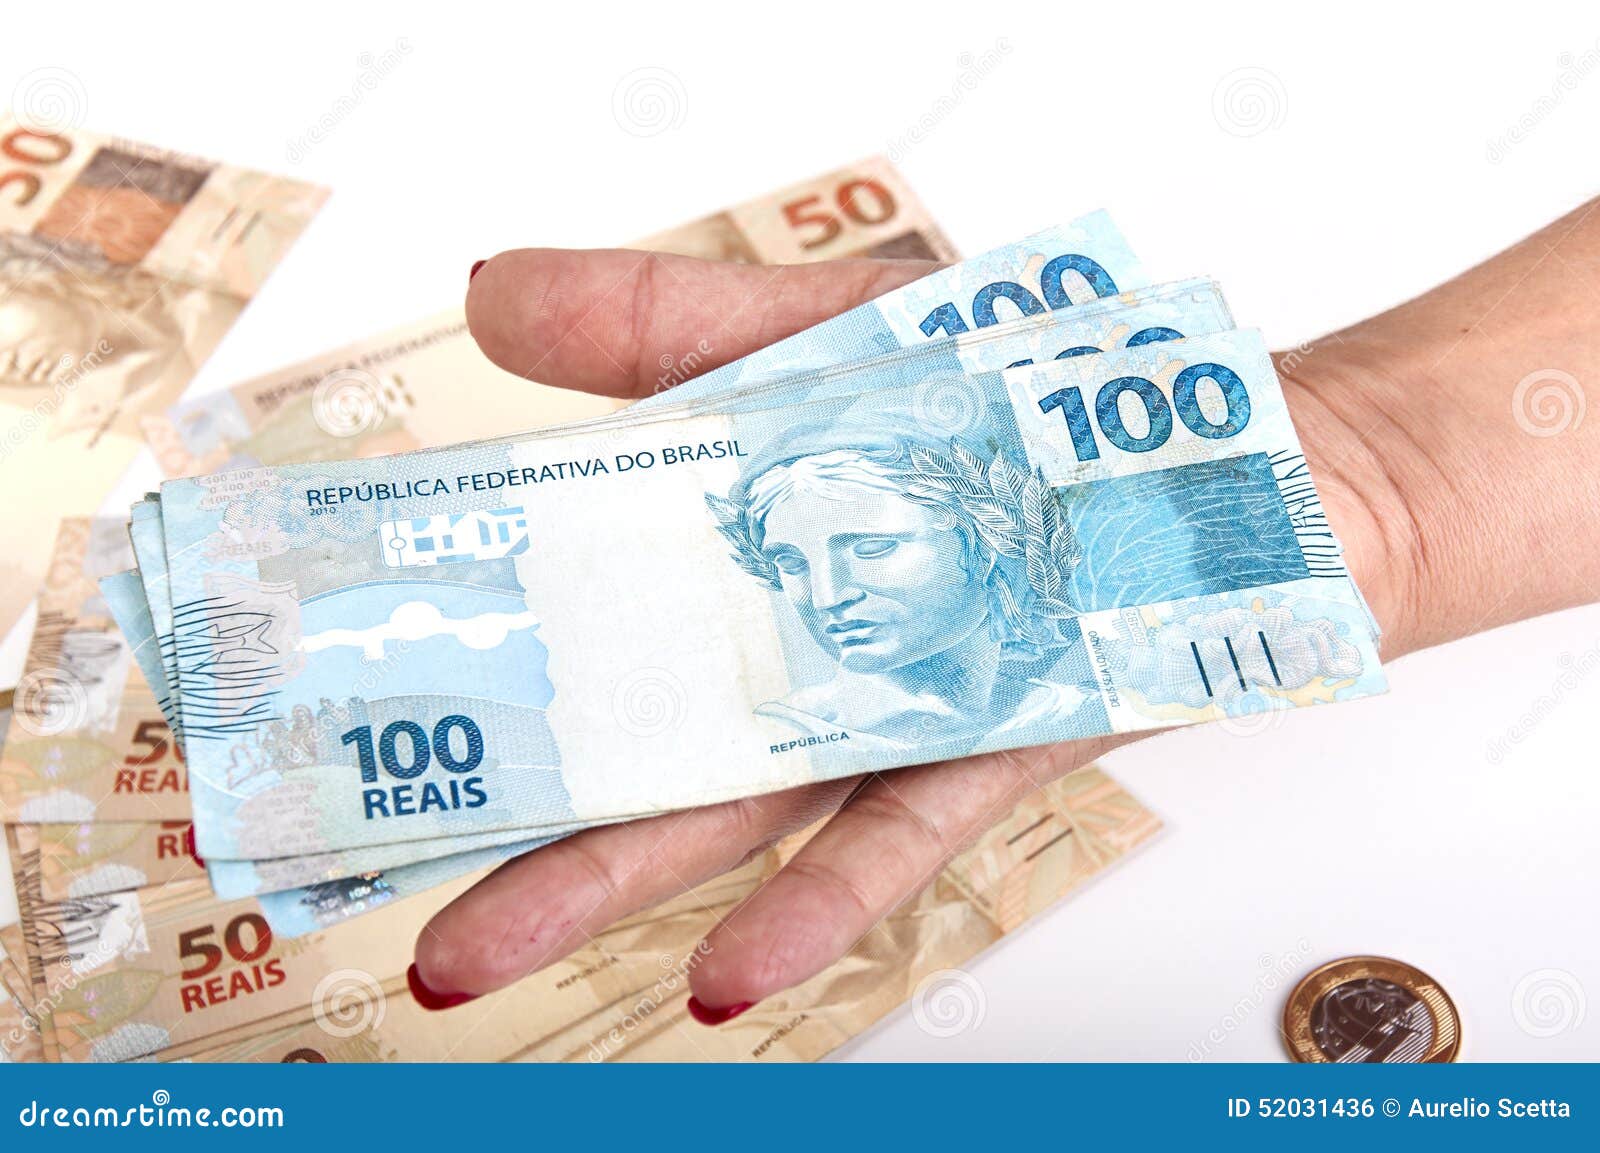 Featured image of post Foto Com Dinheiro Na M o Ap s pagar por rodinei torcedor diz que vai injetar dinheiro no s o paulo